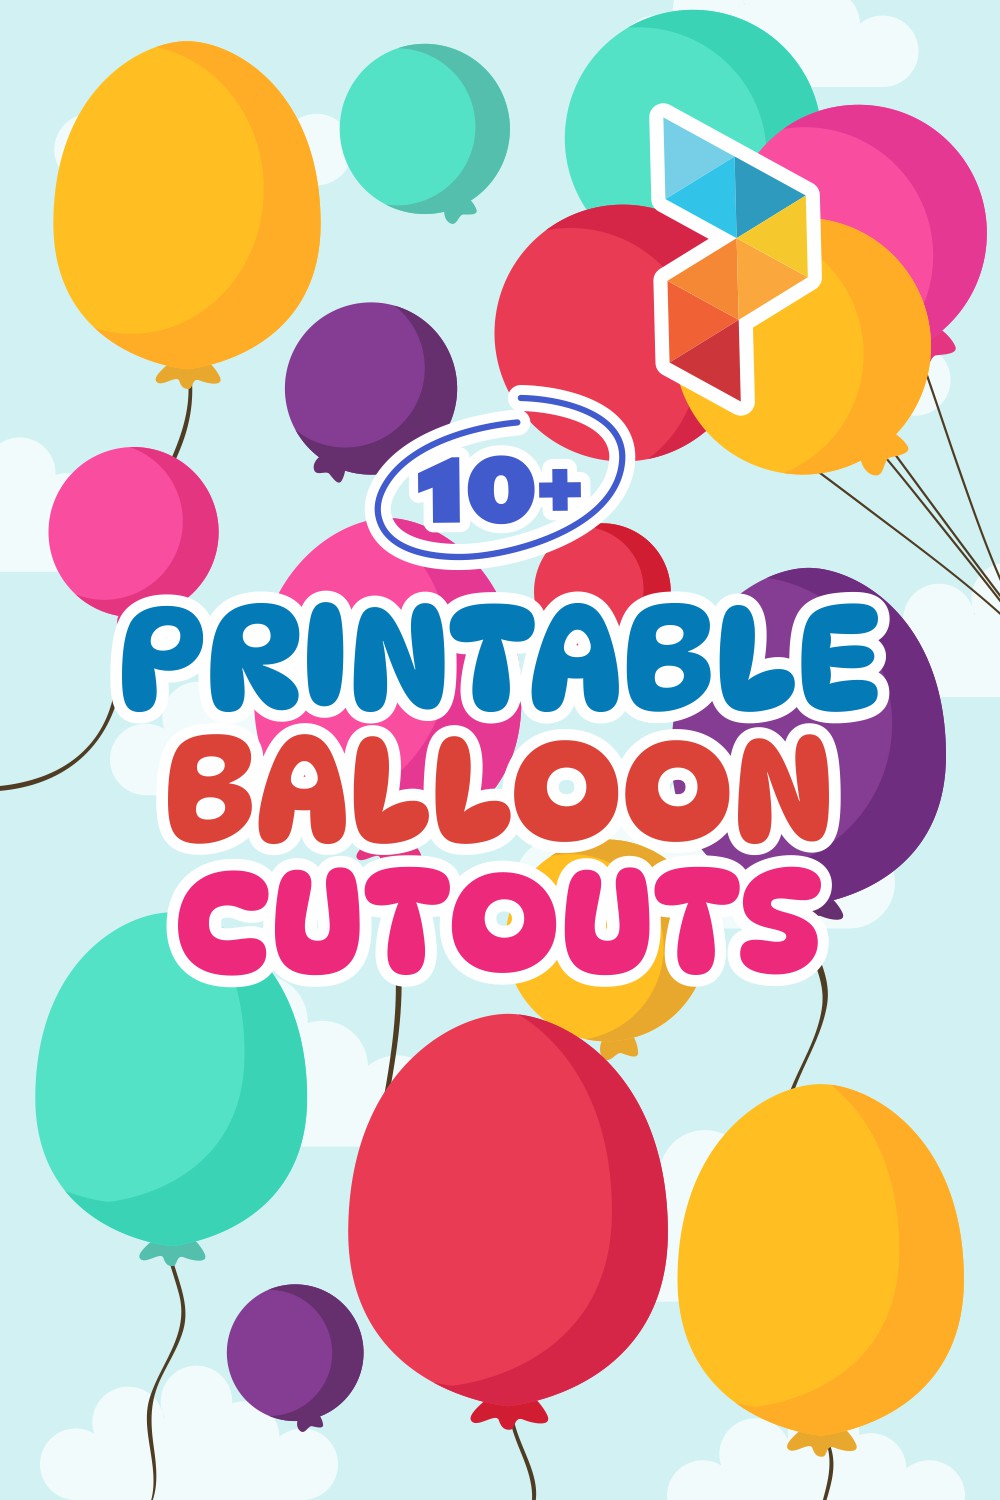 Balloon Cutouts